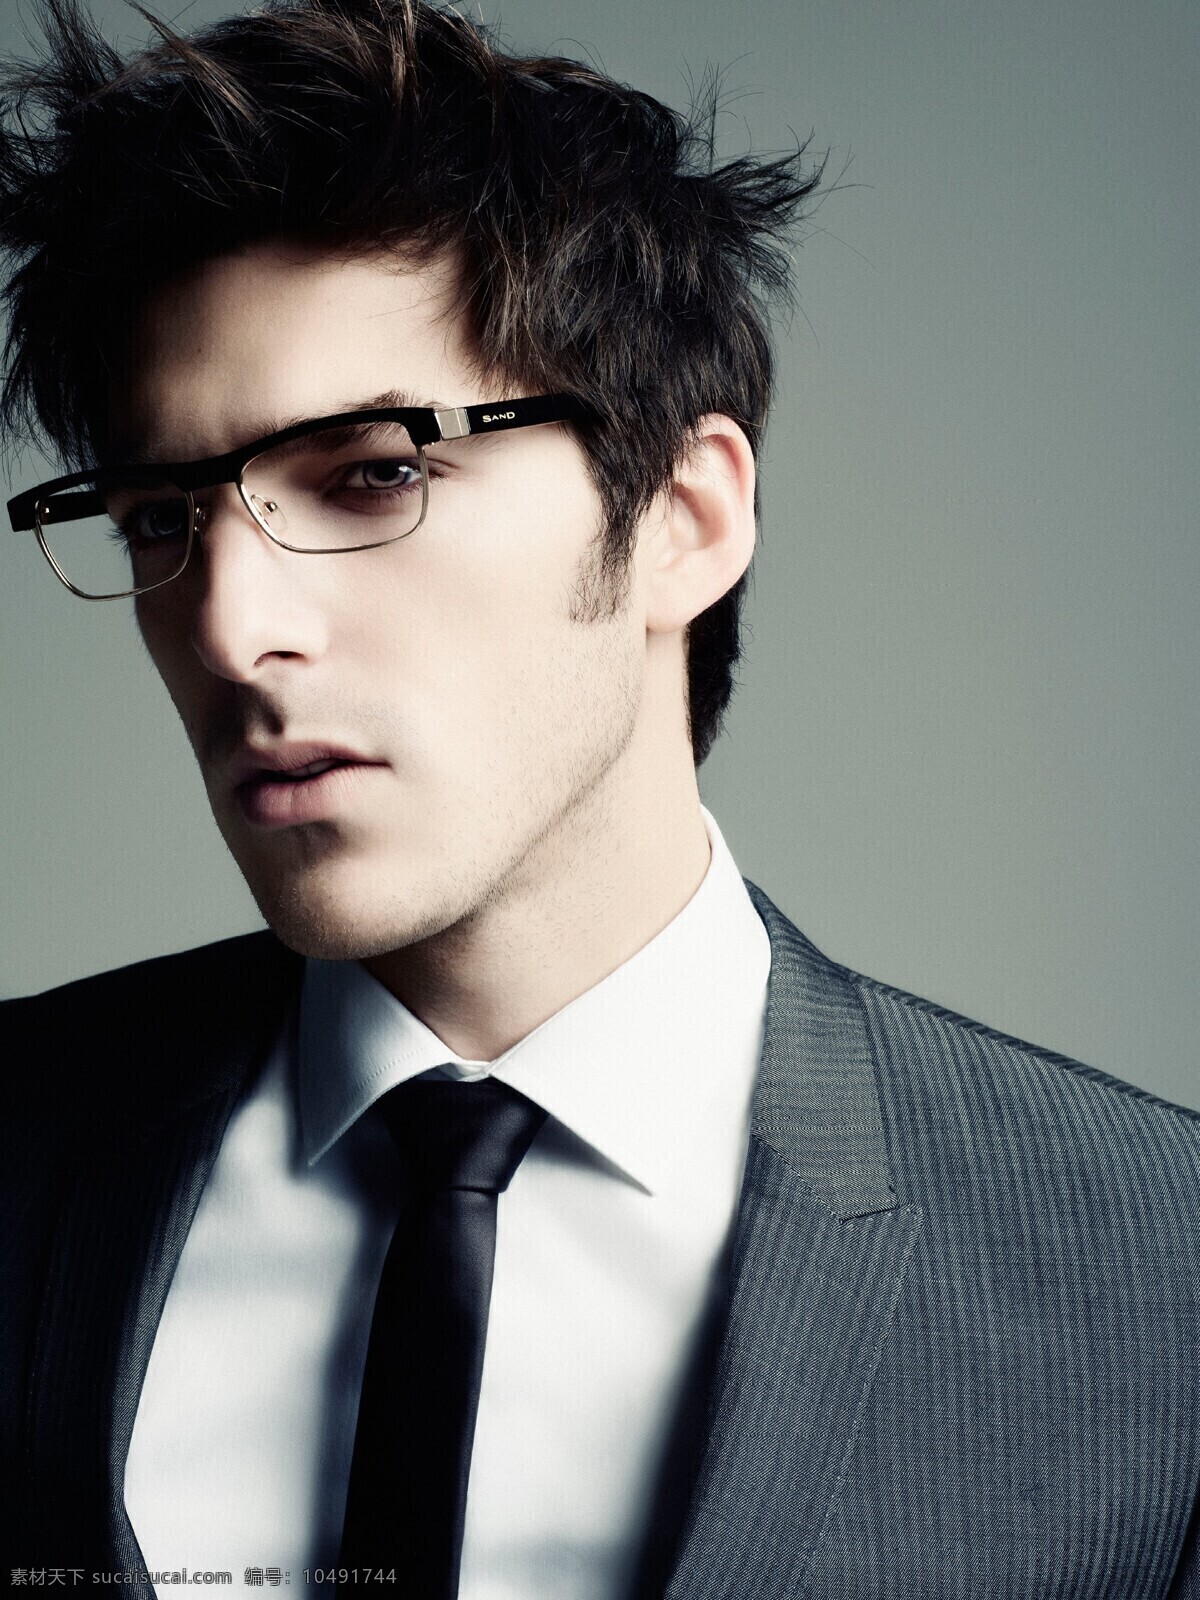 带 眼镜 白领 男人 戴眼镜 戴眼镜的男人 男模 帅哥 模特 个性 帅气 男性男人 人物图库